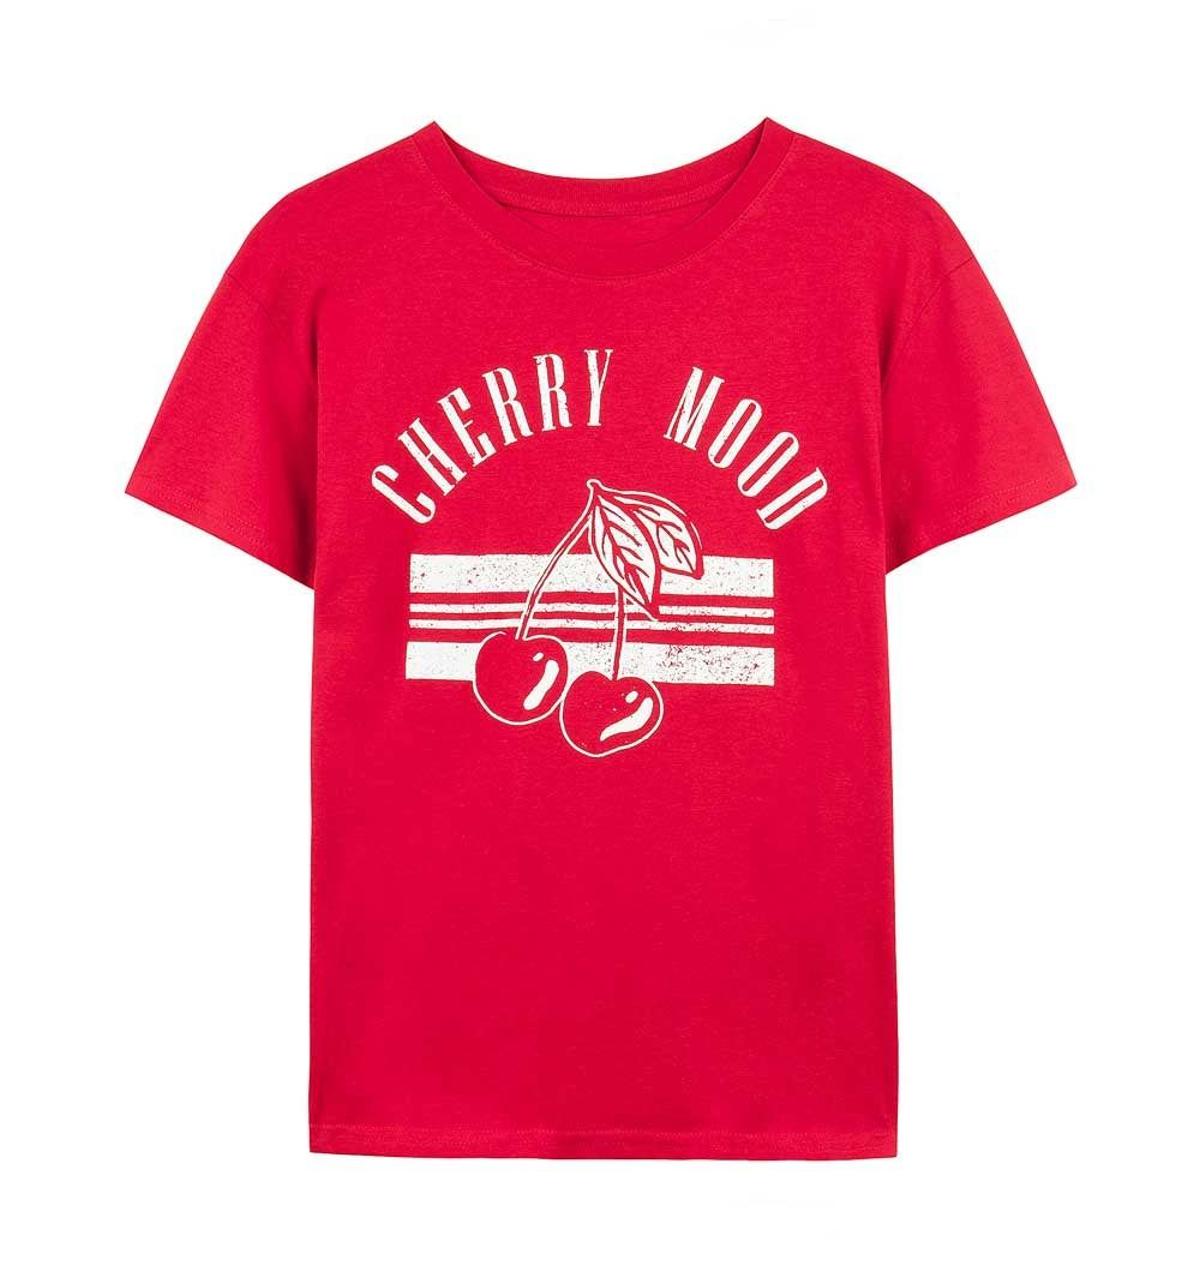 Camiseta en color rojo 'Cherry Mood' de Bershka (Precio: 4, 99 euros)